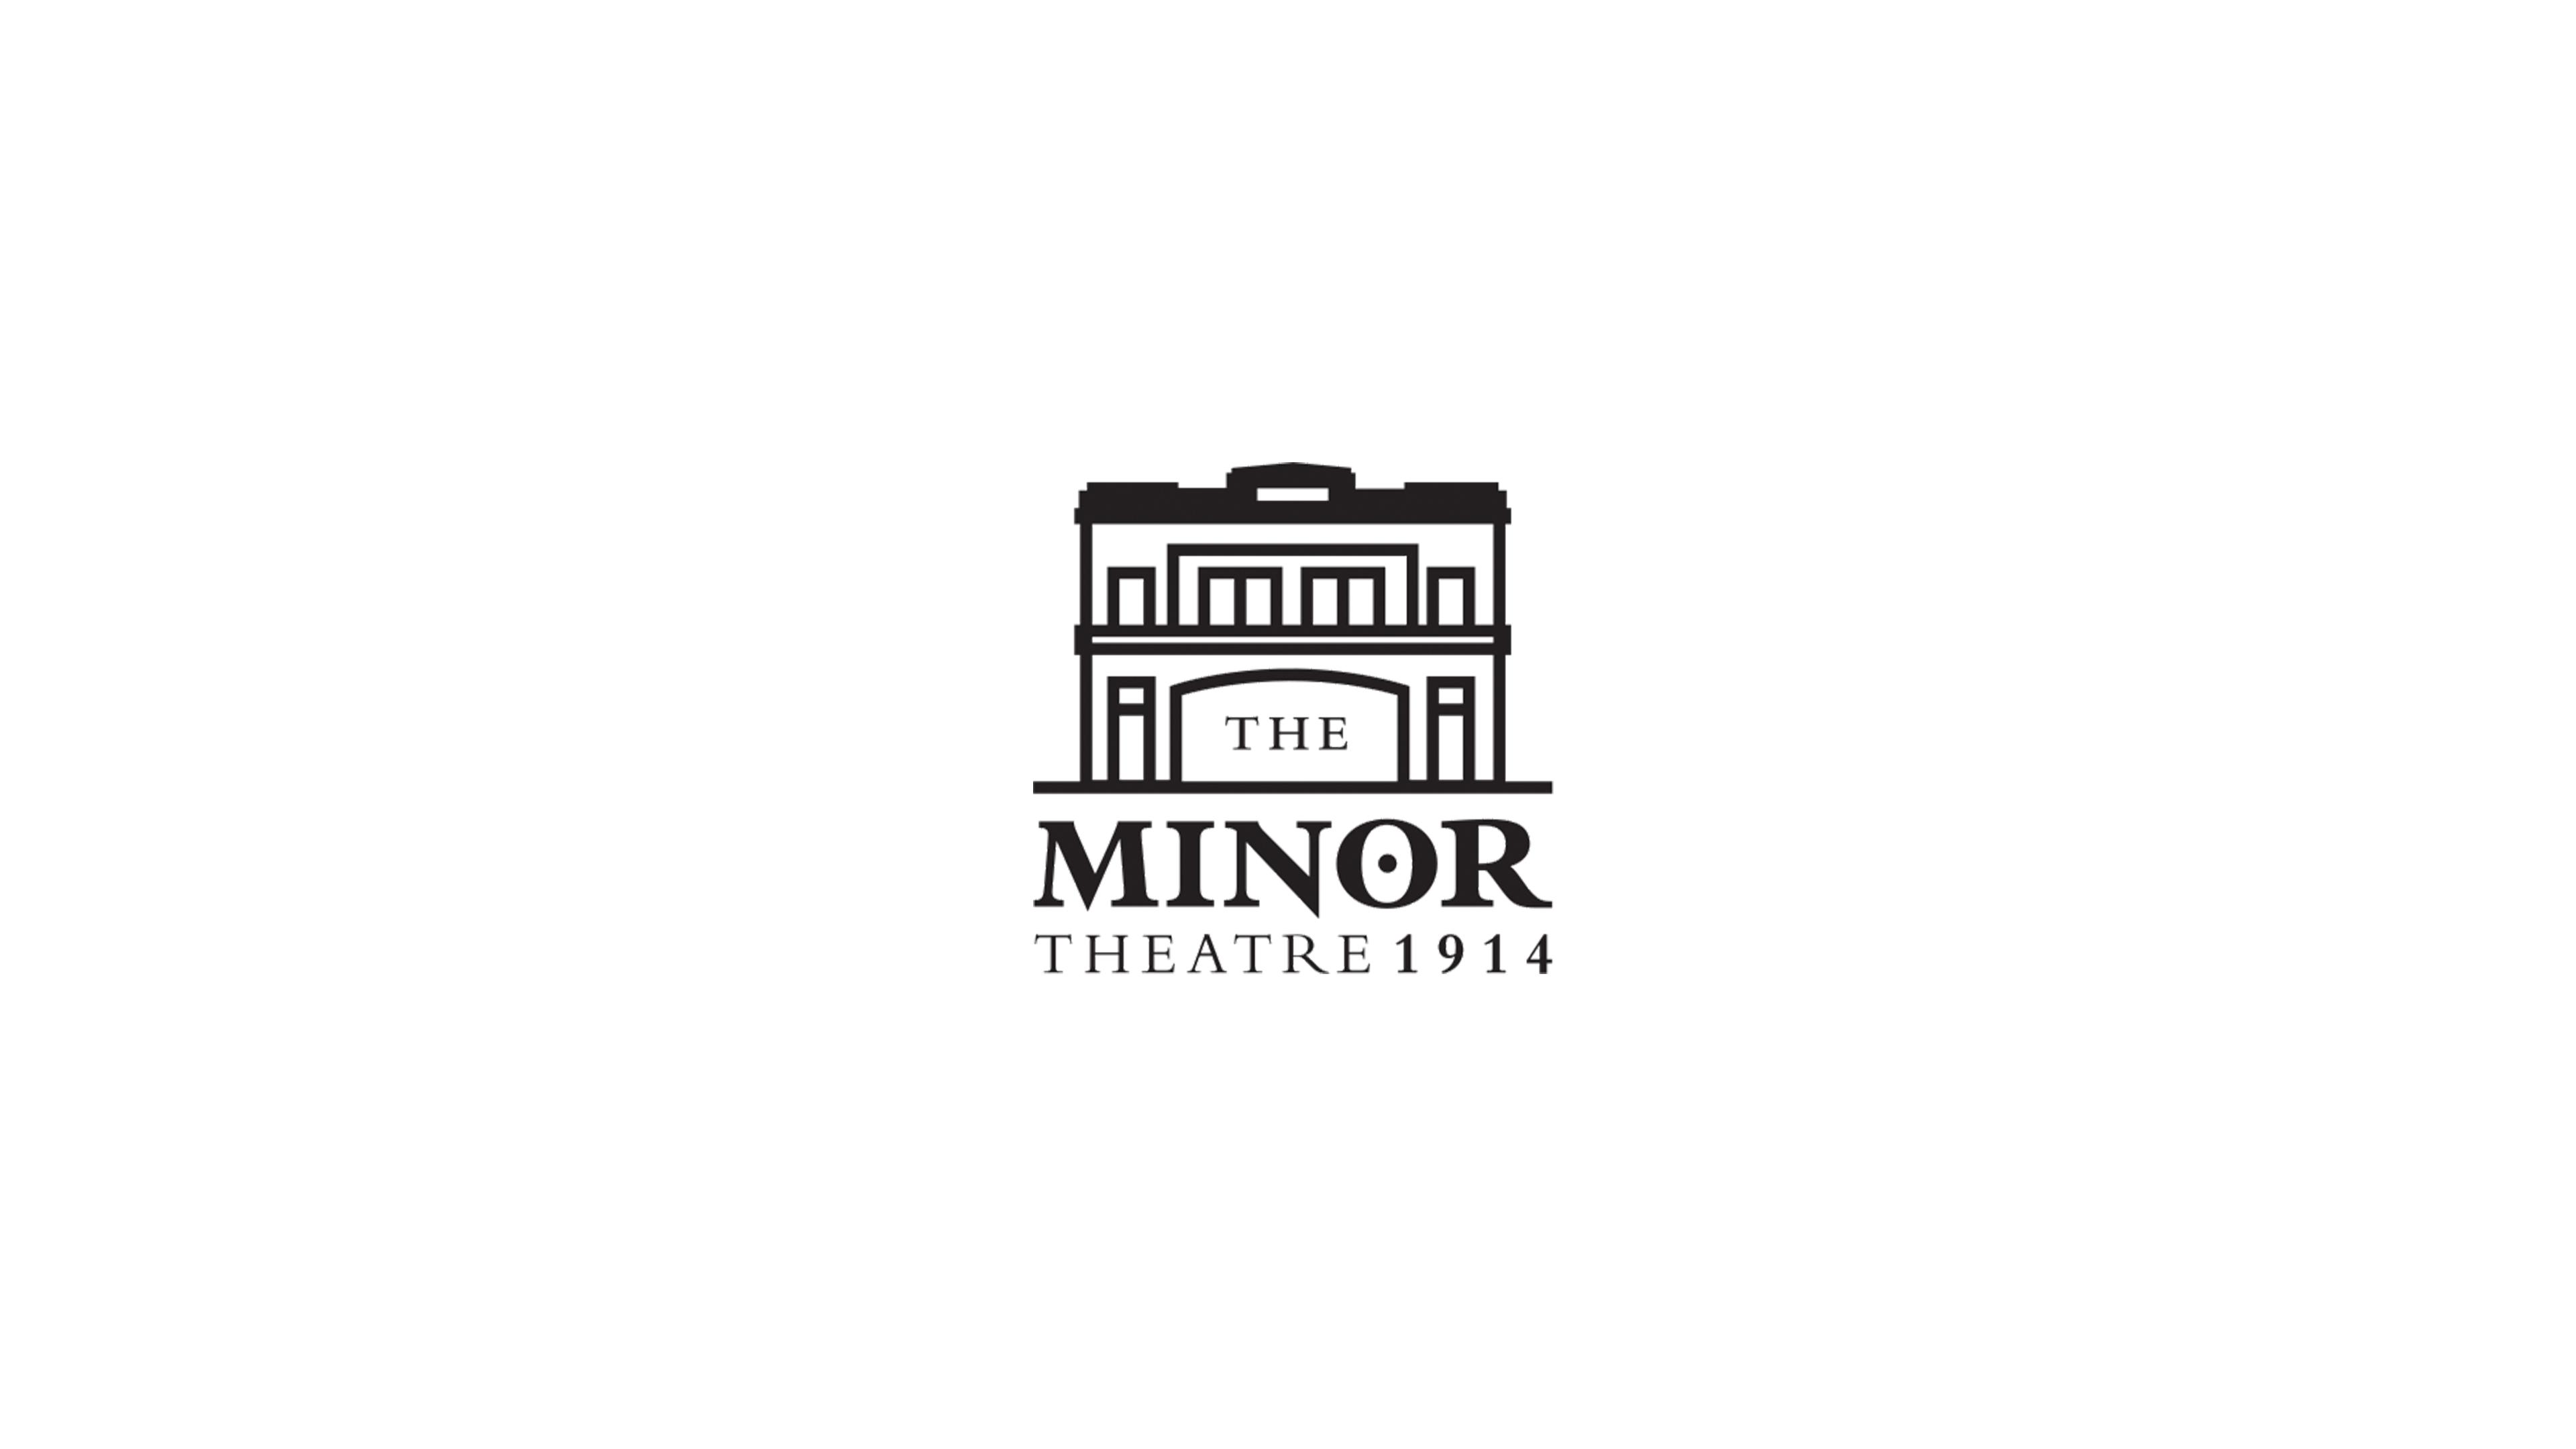 The Minor Theatre